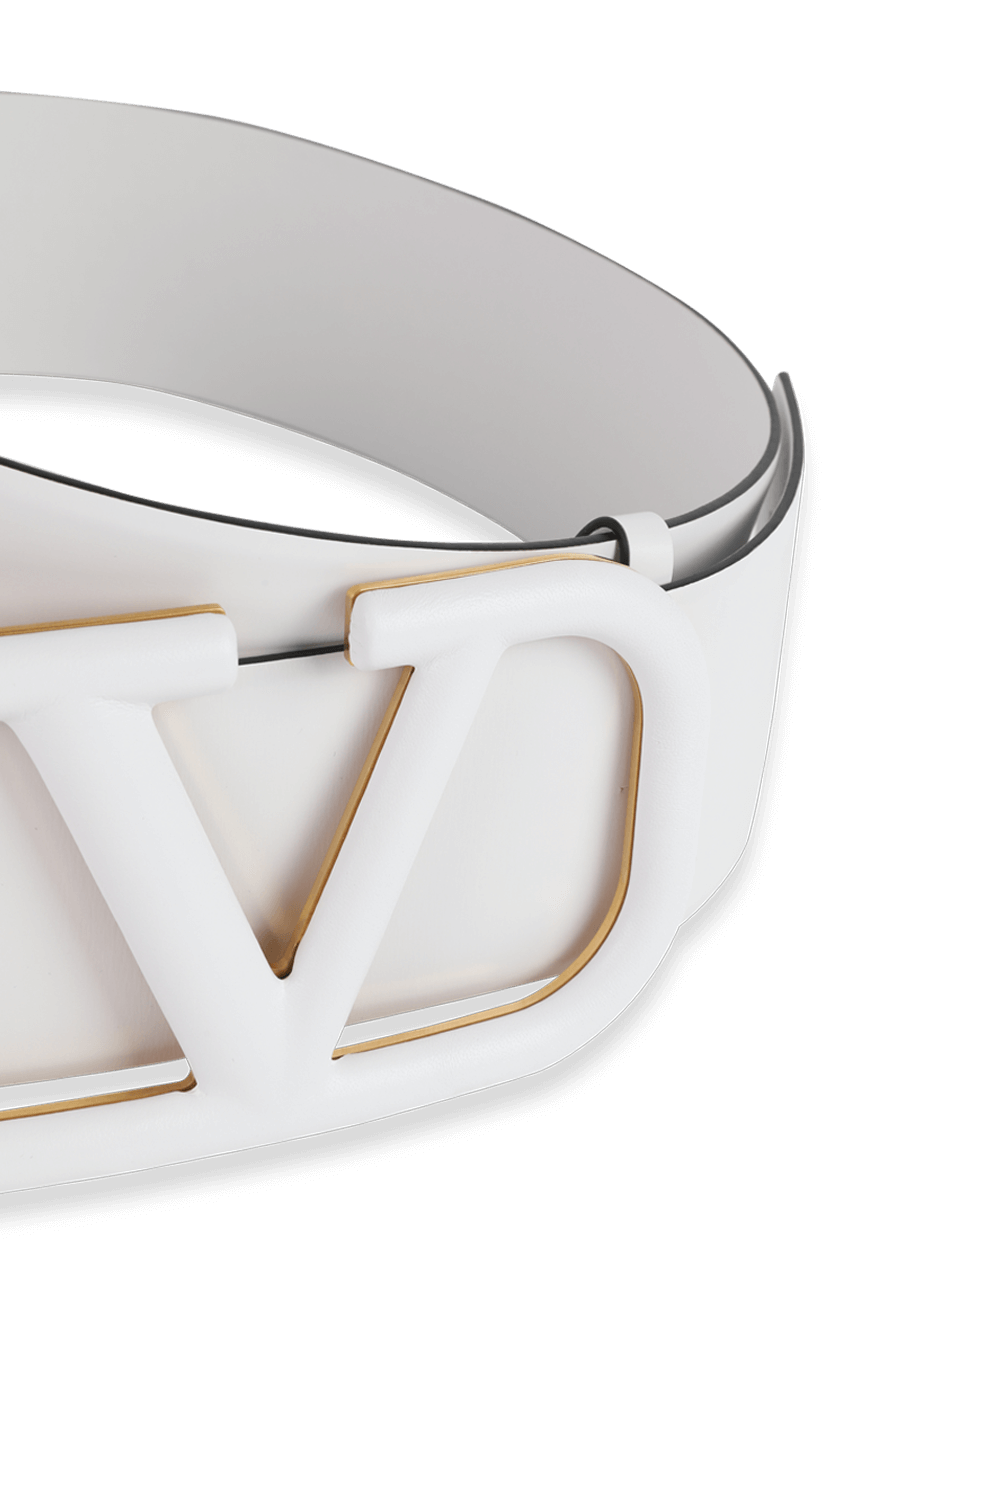 V Logo Signature Belt in White Glossy Leather VALENTINO GARAVANI